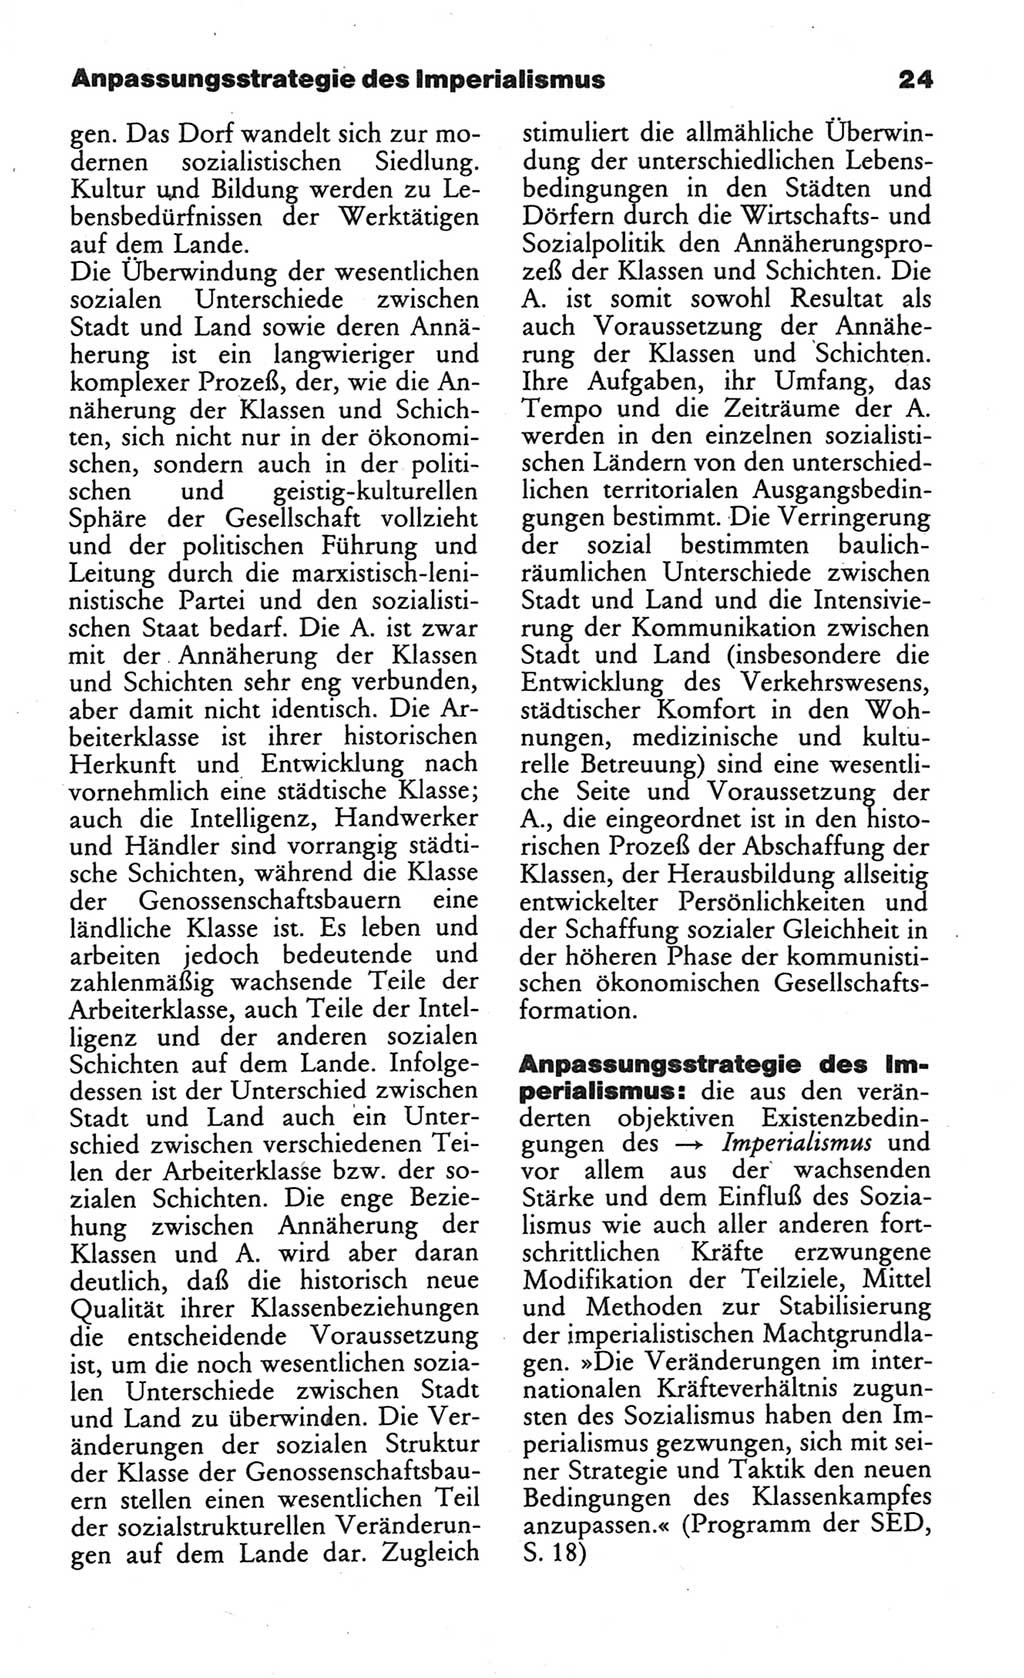 Wörterbuch des wissenschaftlichen Kommunismus [Deutsche Demokratische Republik (DDR)] 1984, Seite 24 (Wb. wiss. Komm. DDR 1984, S. 24)